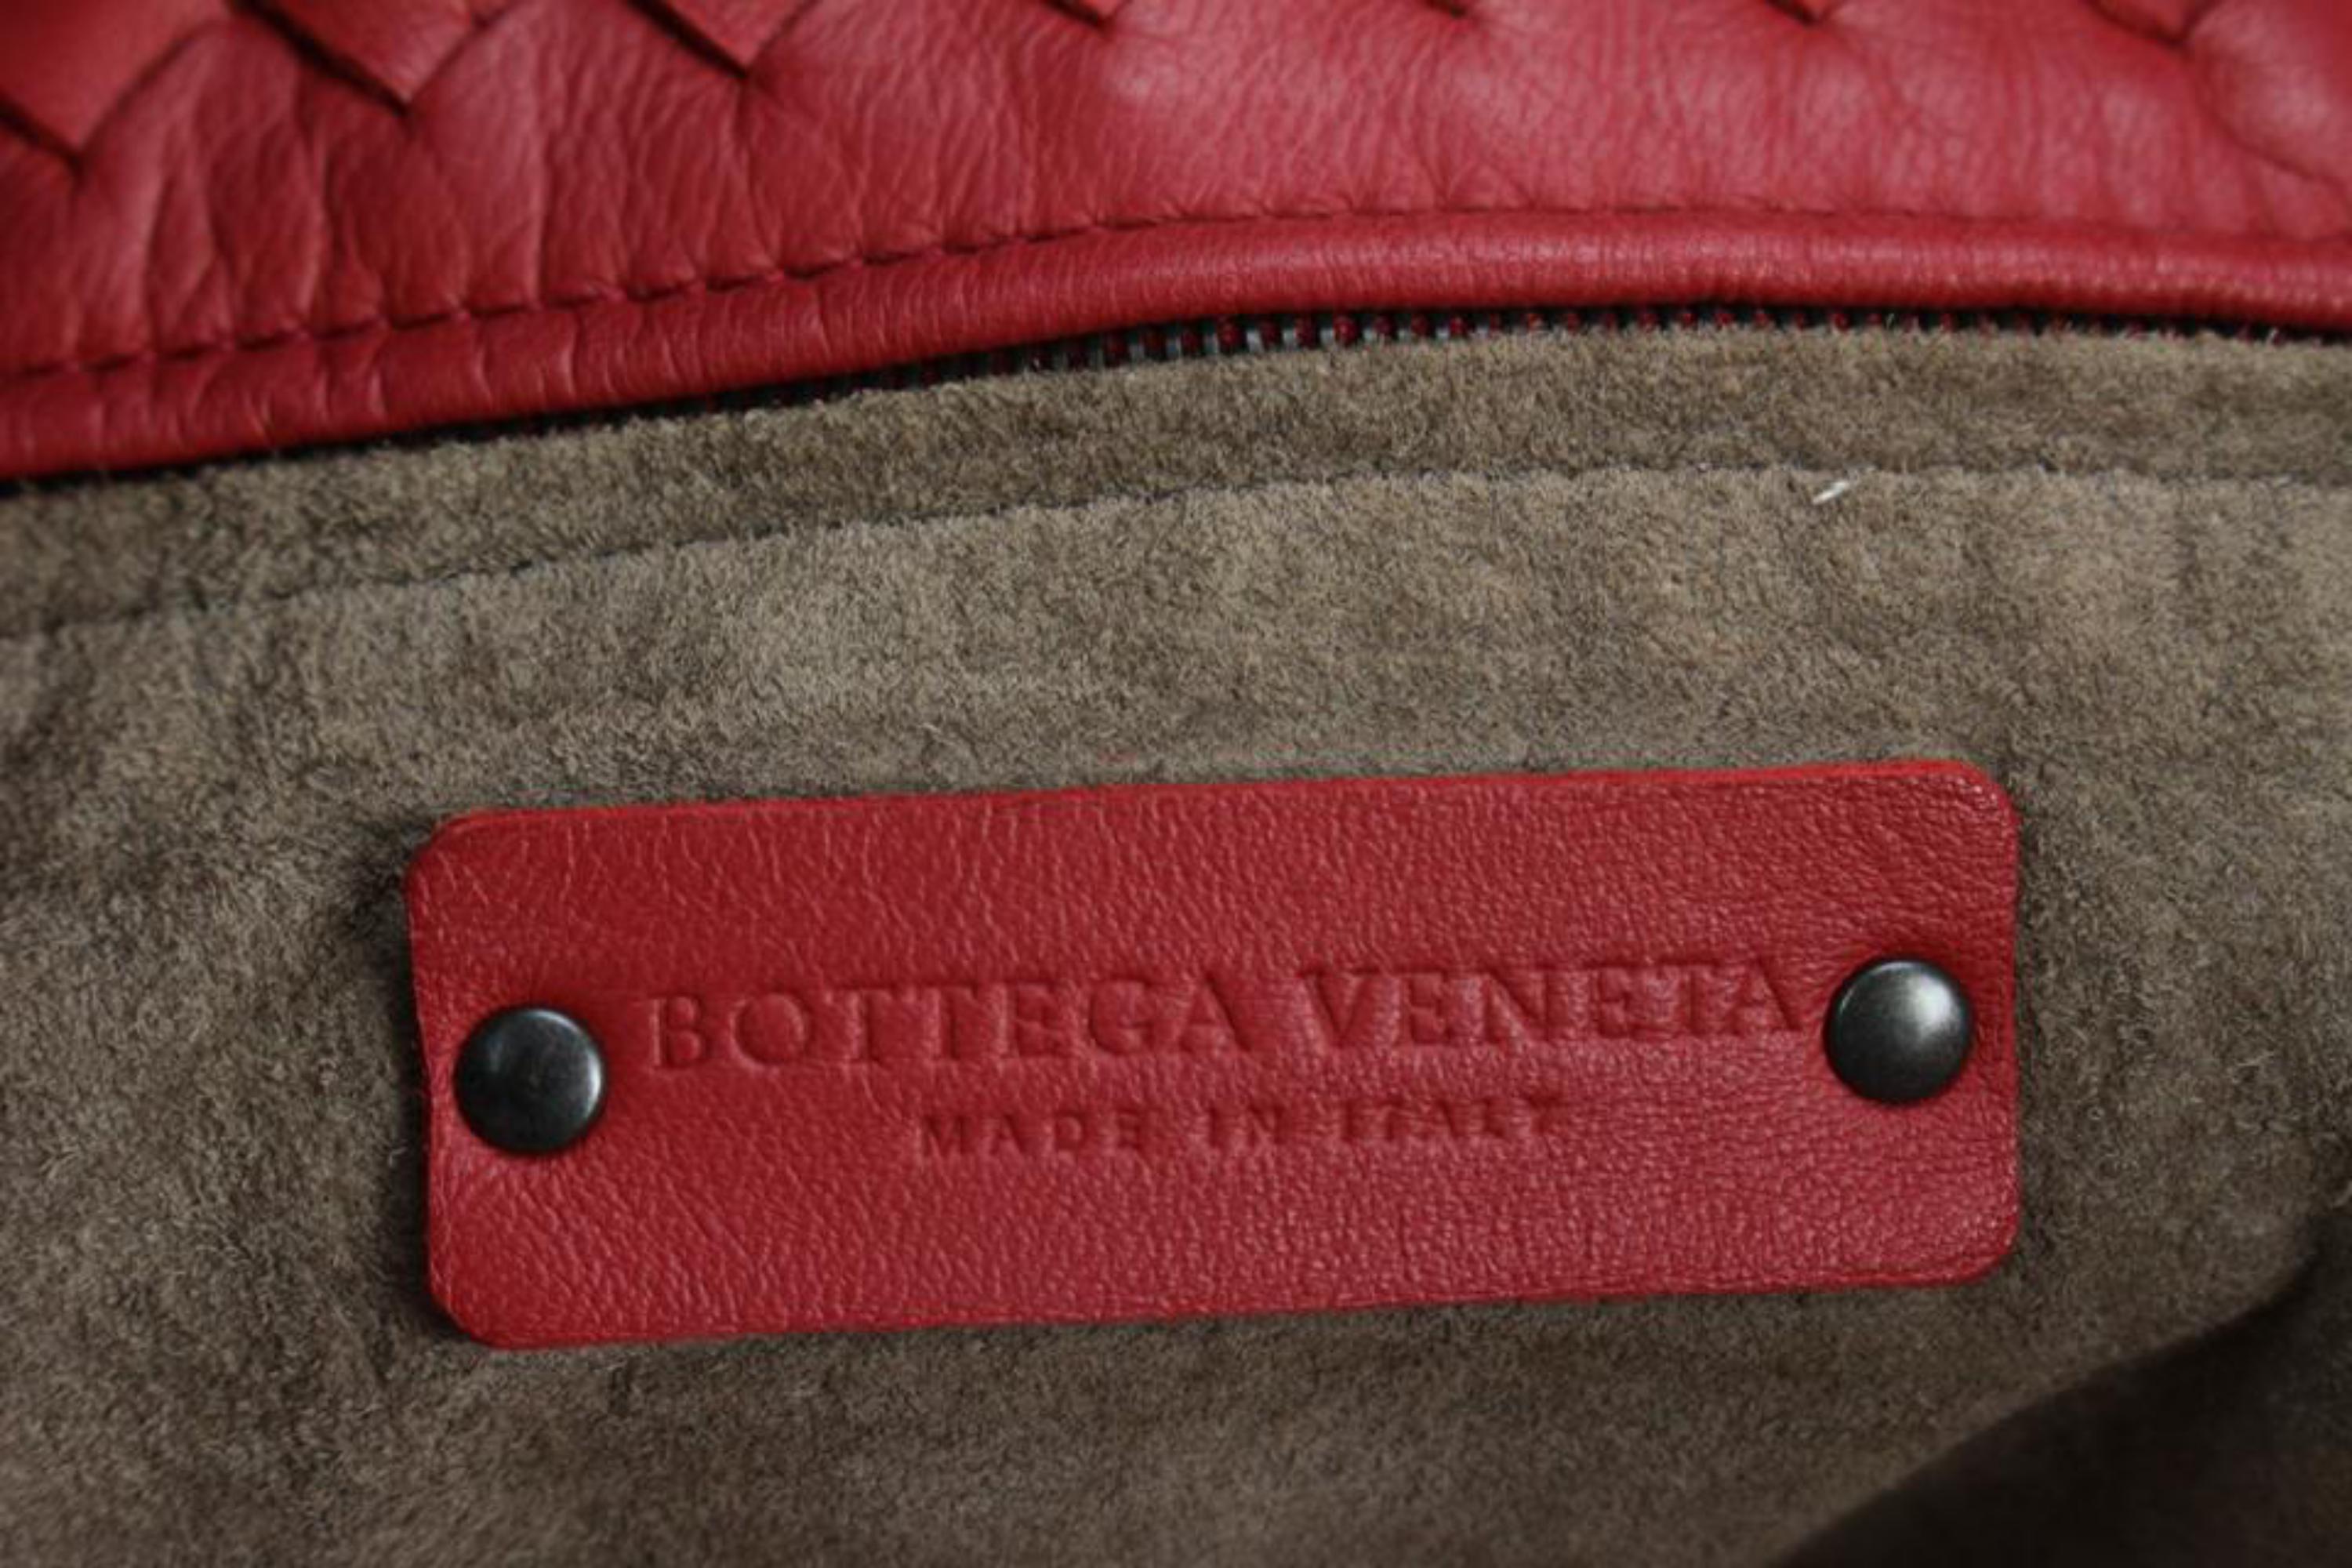 Bottega Veneta Red Intrecciato Nappa Leather Garda Bag 97bv68s 7